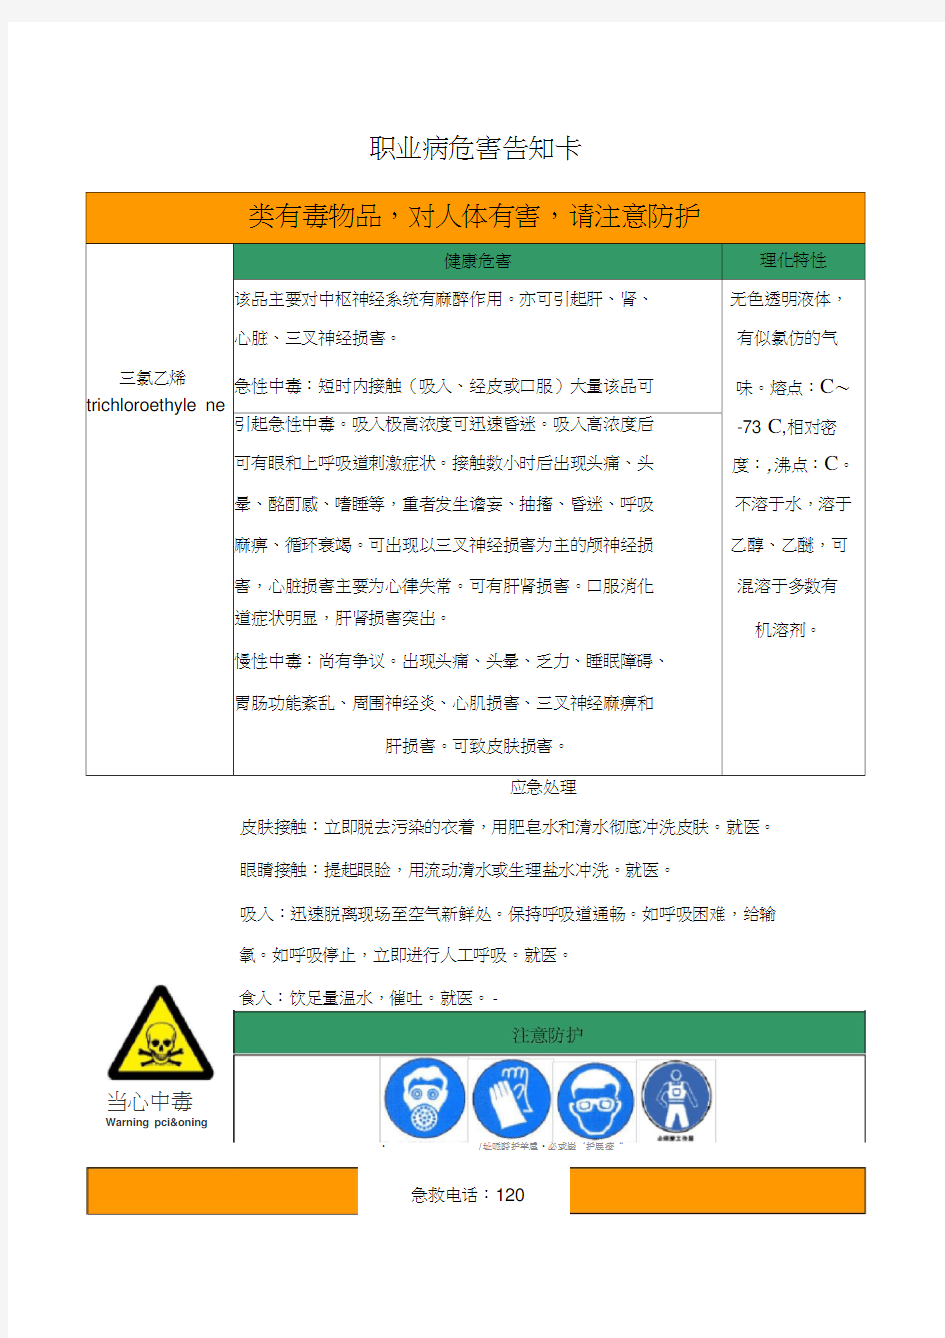 三氯乙烯职业病危害告知卡(20210202212707)